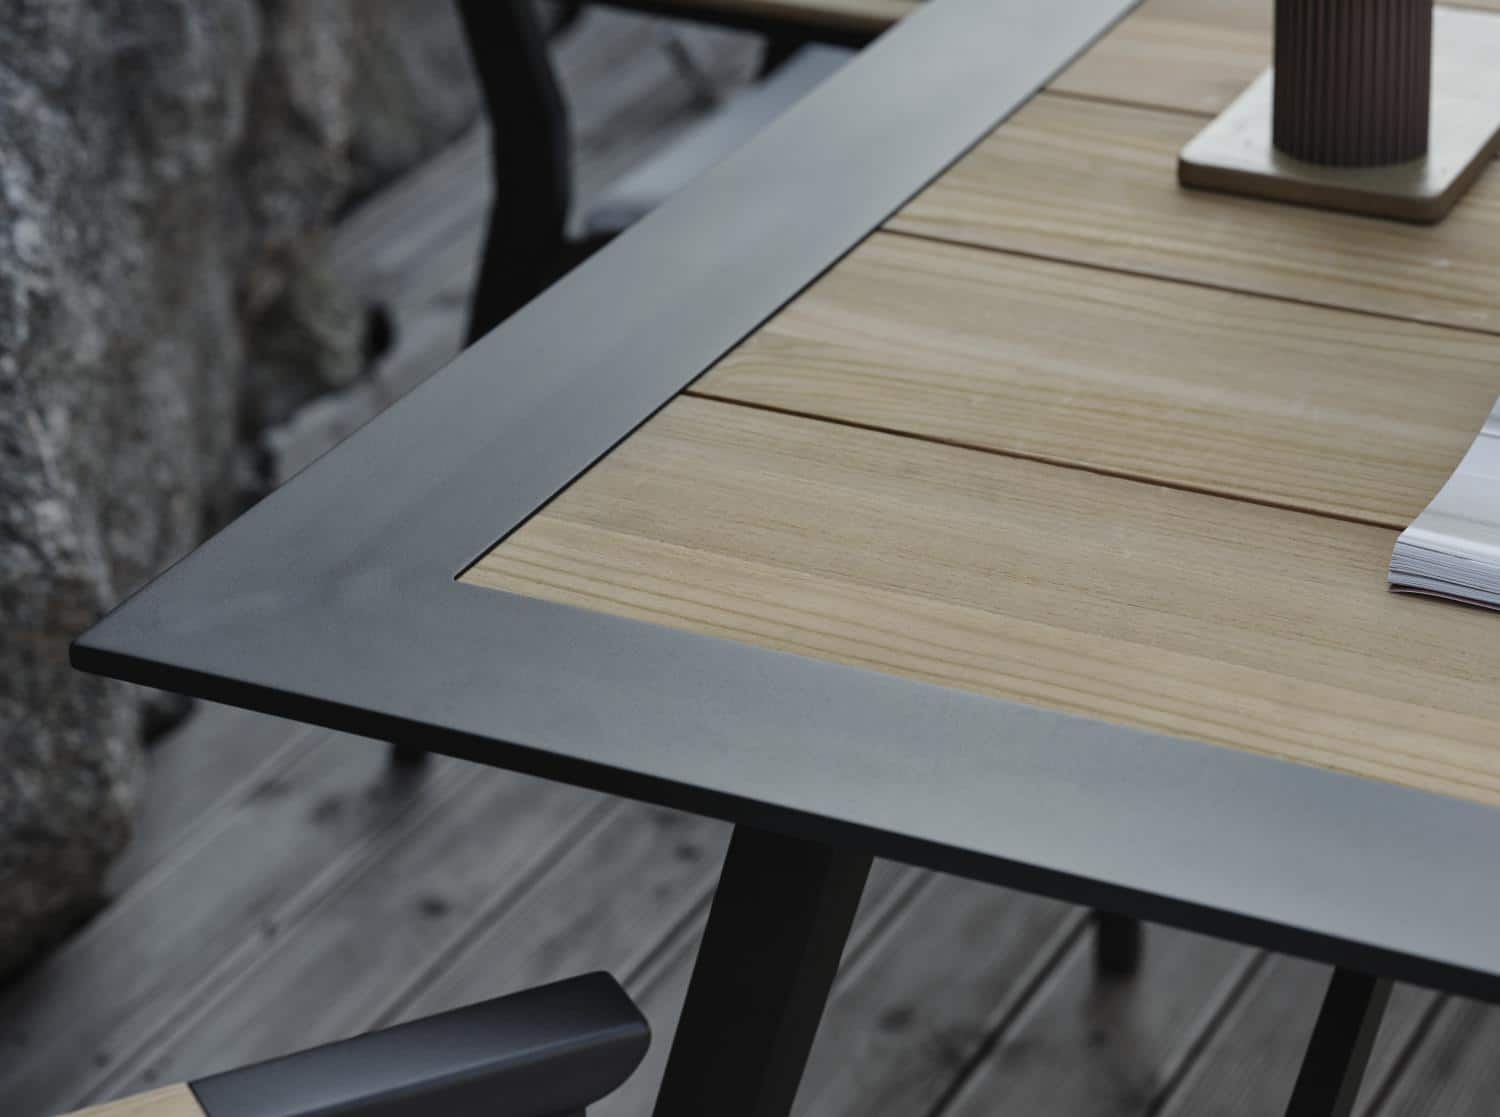 Brafab Chios Matbord är ett förstklassigt matbord med svart aluminiumram och infälld topp med tvärgående ribbor i teak.